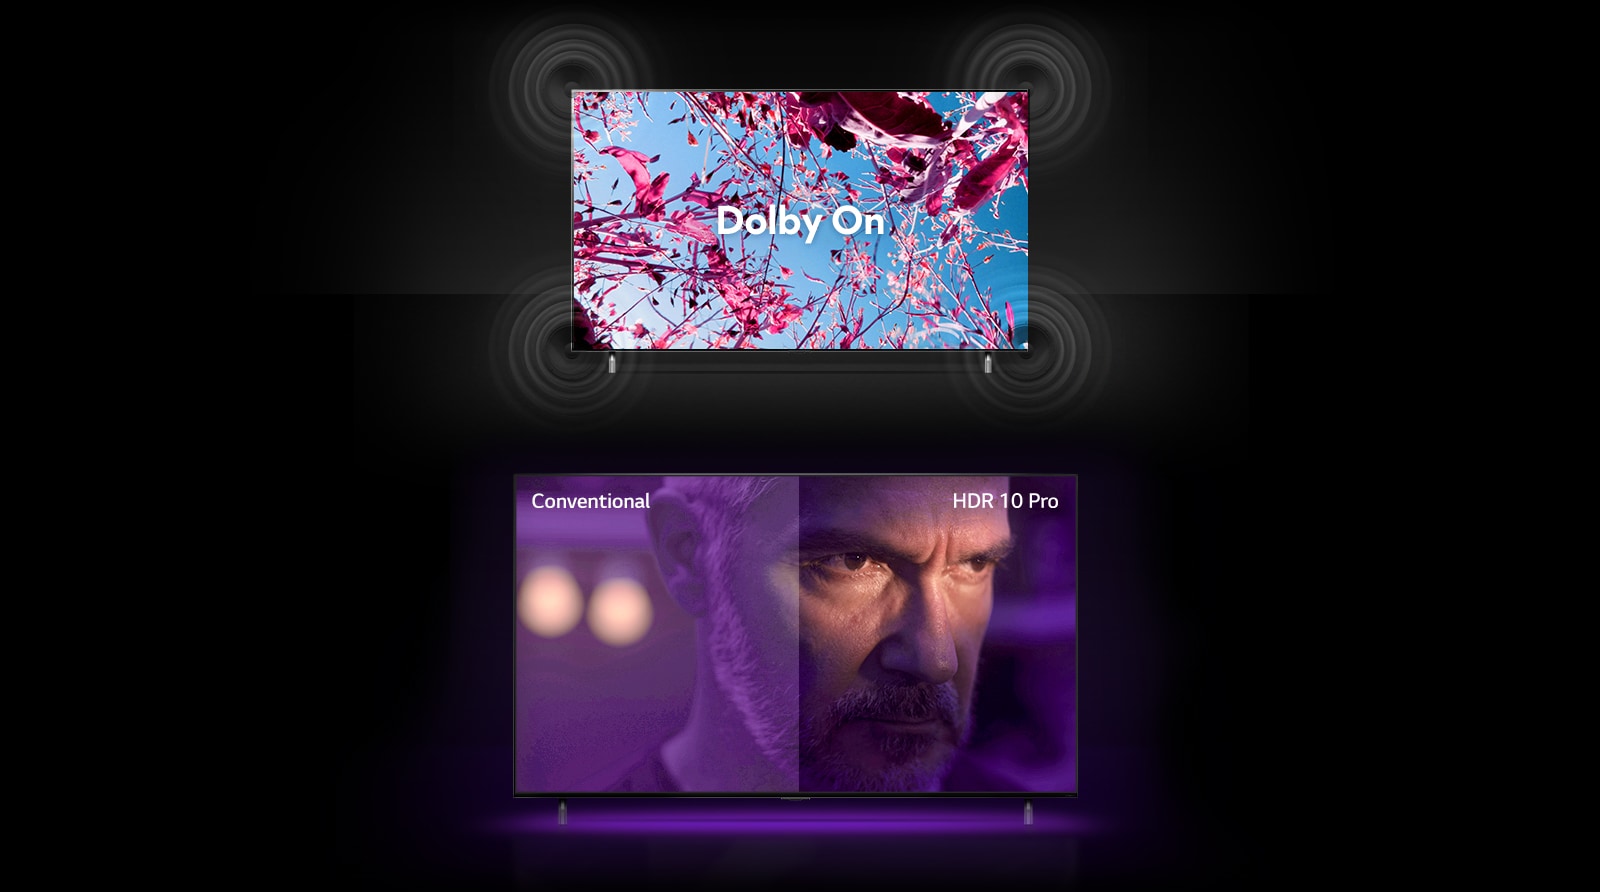 A QNED TV képernyőjén egy nyári mezőn rózsaszín repcevirágok láthatók, középen egy Dolby KI felirat olvasható. A képernyőn látható kép egyre világosabbá válik, ahogy a felirat Dolby BE szövegre vált. Alatta egy másik QNED TV, és egy dühösnek látszó öreg ember van a képernyőn. A TV képernyőjén lévő kép két részre van osztva. A kép bal oldali fele fakónak tűnik kevésbé élénk színekkel, a jobb oldali rész pedig élénkebbnek és színesebbnek tűnik. A bal felső sarokban a „hagyományos”, a jobb felső sarokban pedig a „HDR 10 PRO” felirat olvasható.